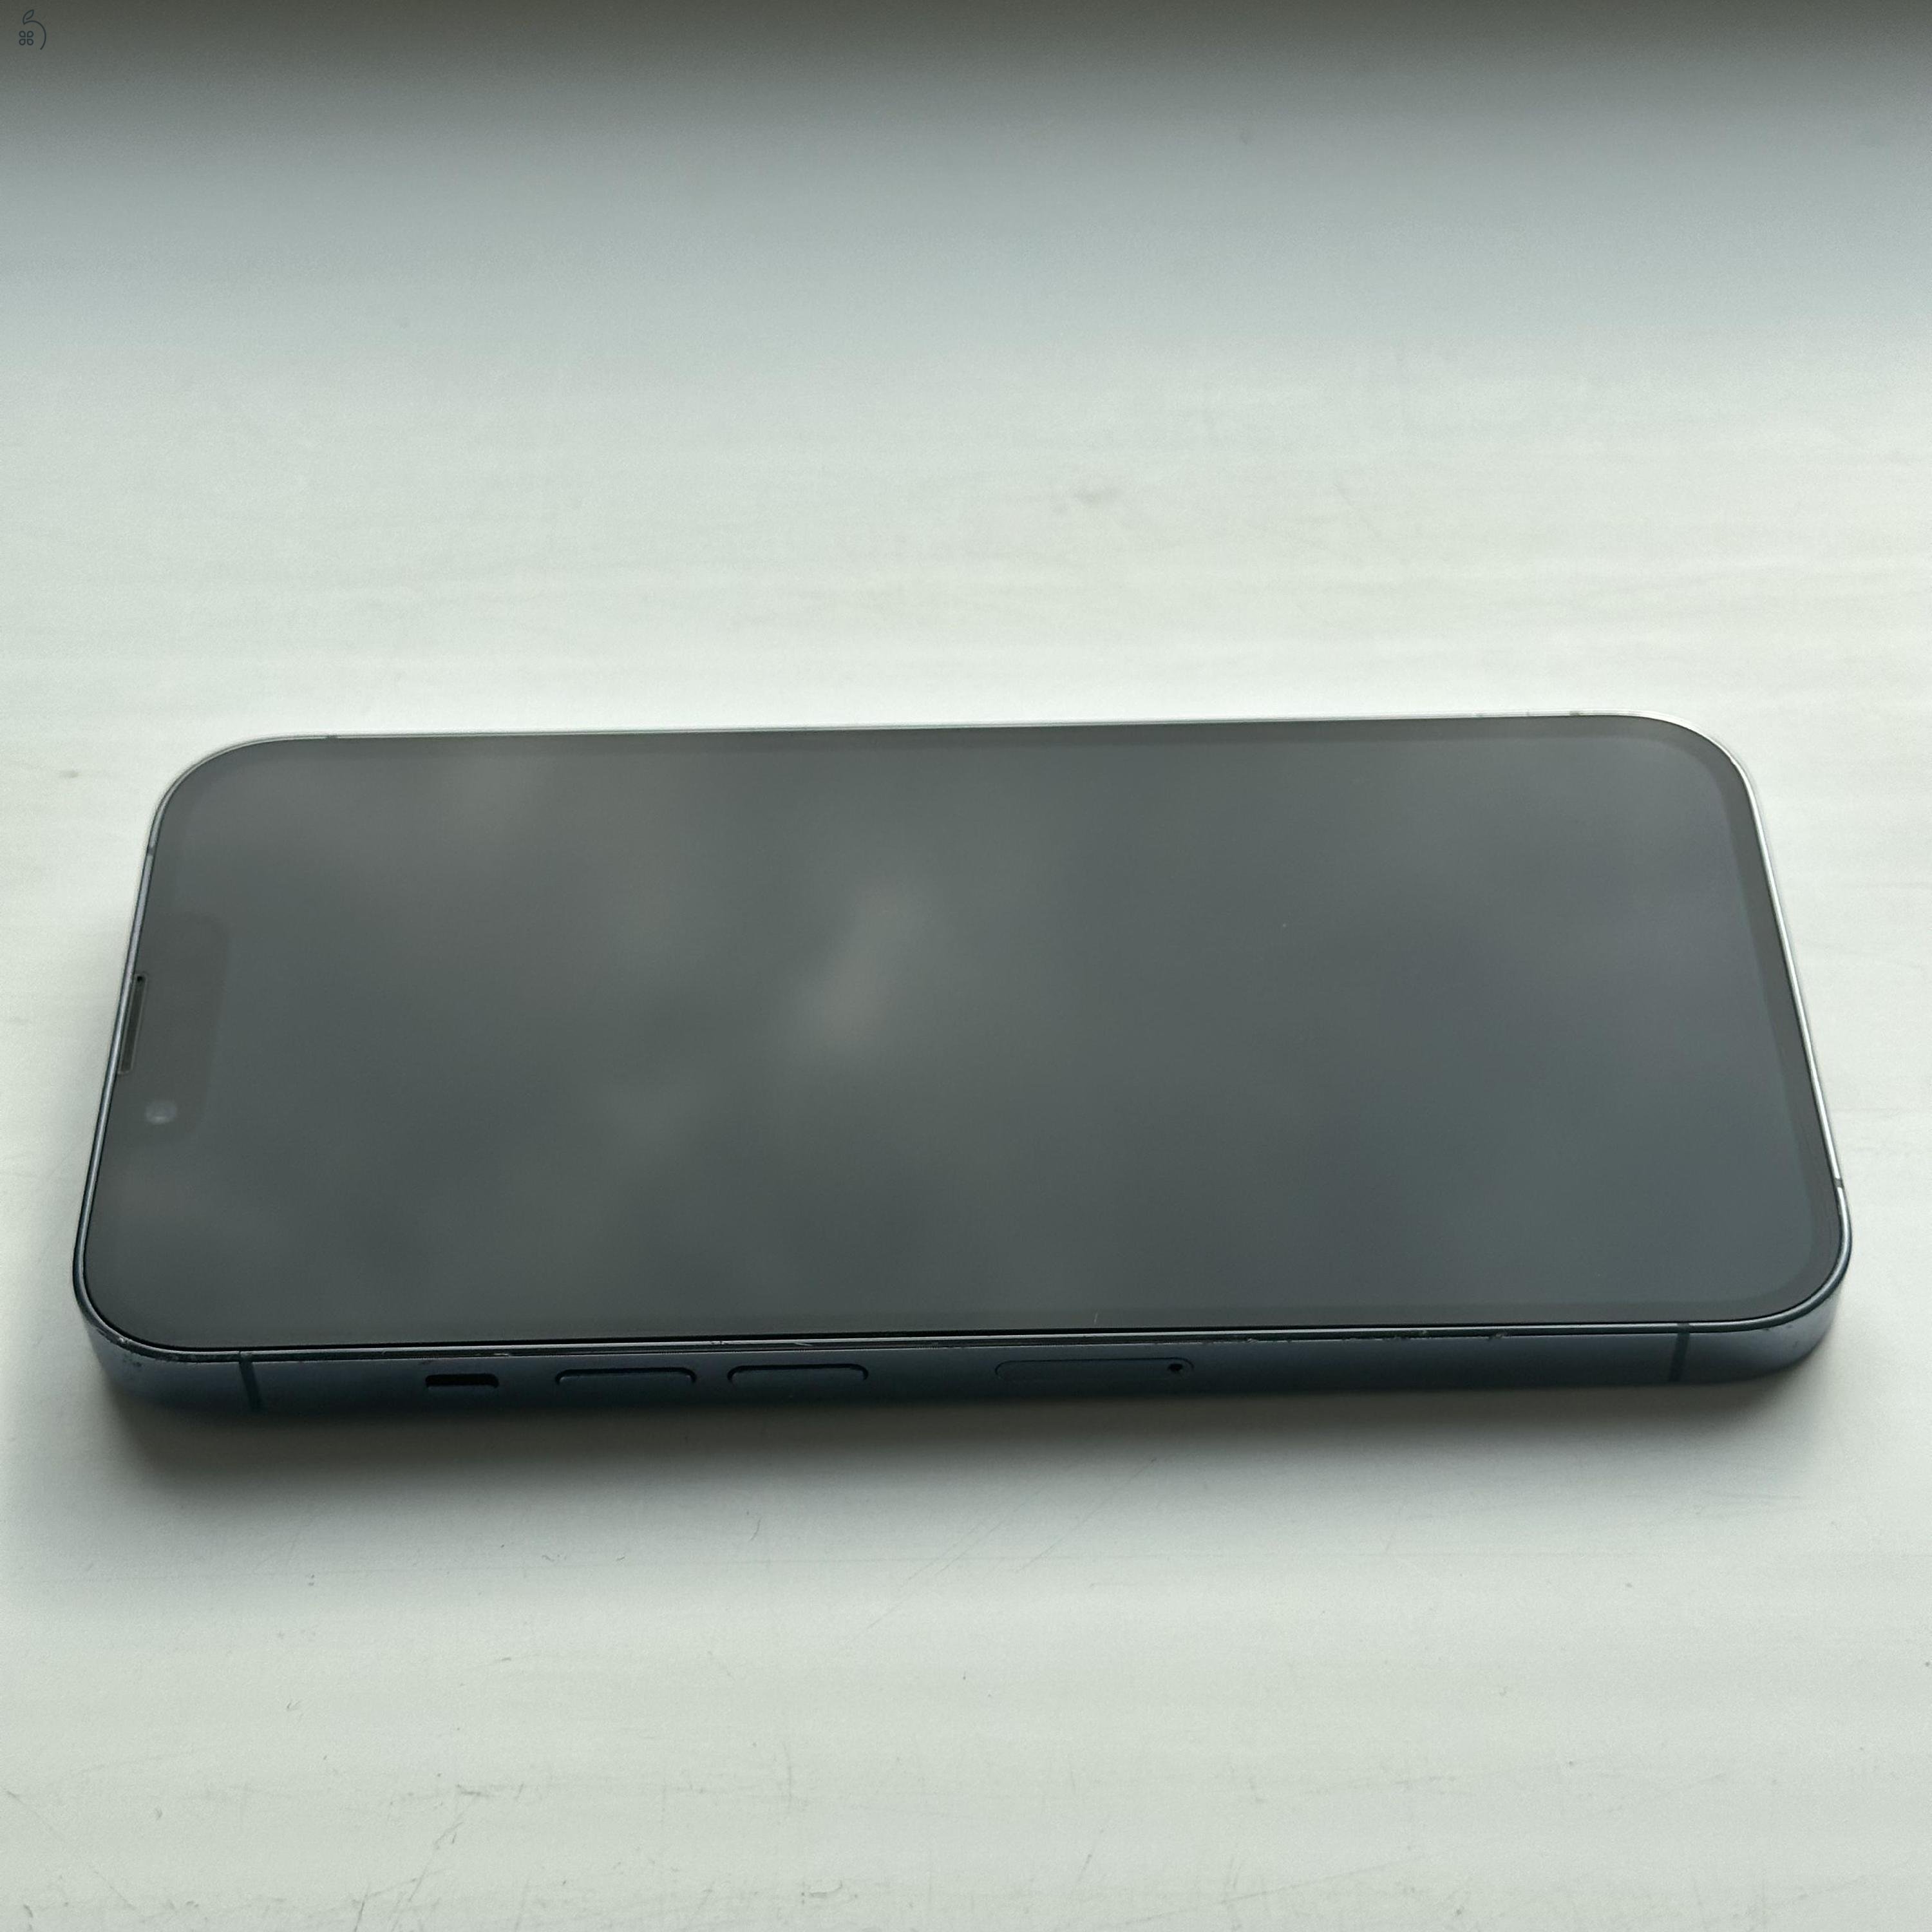 GYÖNYÖRŰ iPhone 13 Pro 128GB Sierra Blue - 1 ÉV GARANCIA, Kártyafüggetlen, 87% Akkumulátor